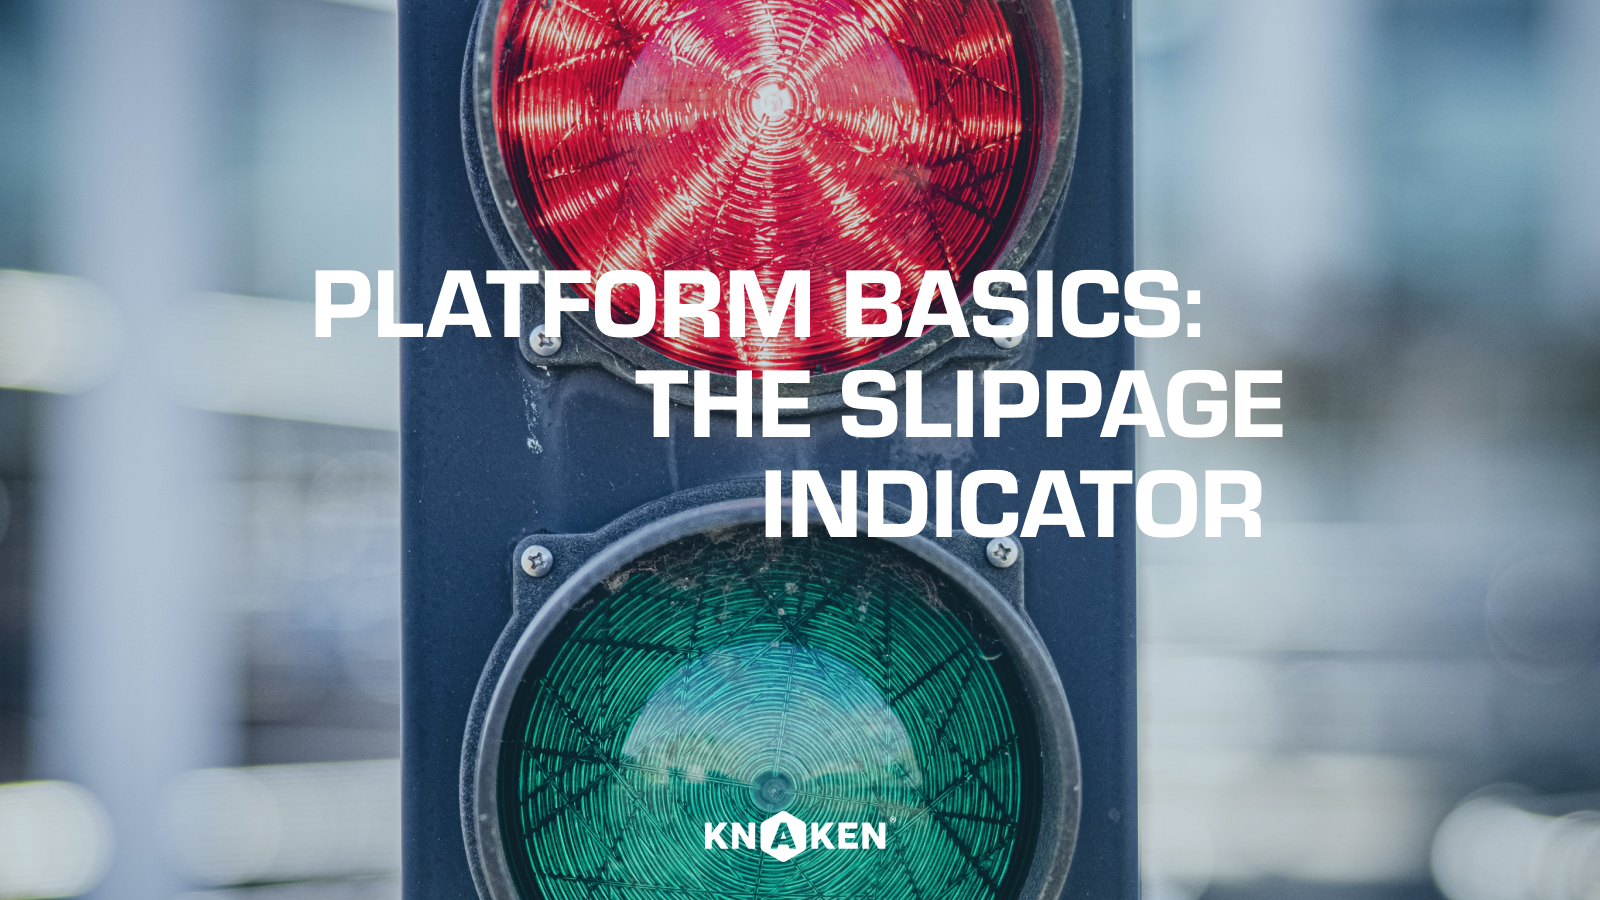 Platform basics: The slippage indicator